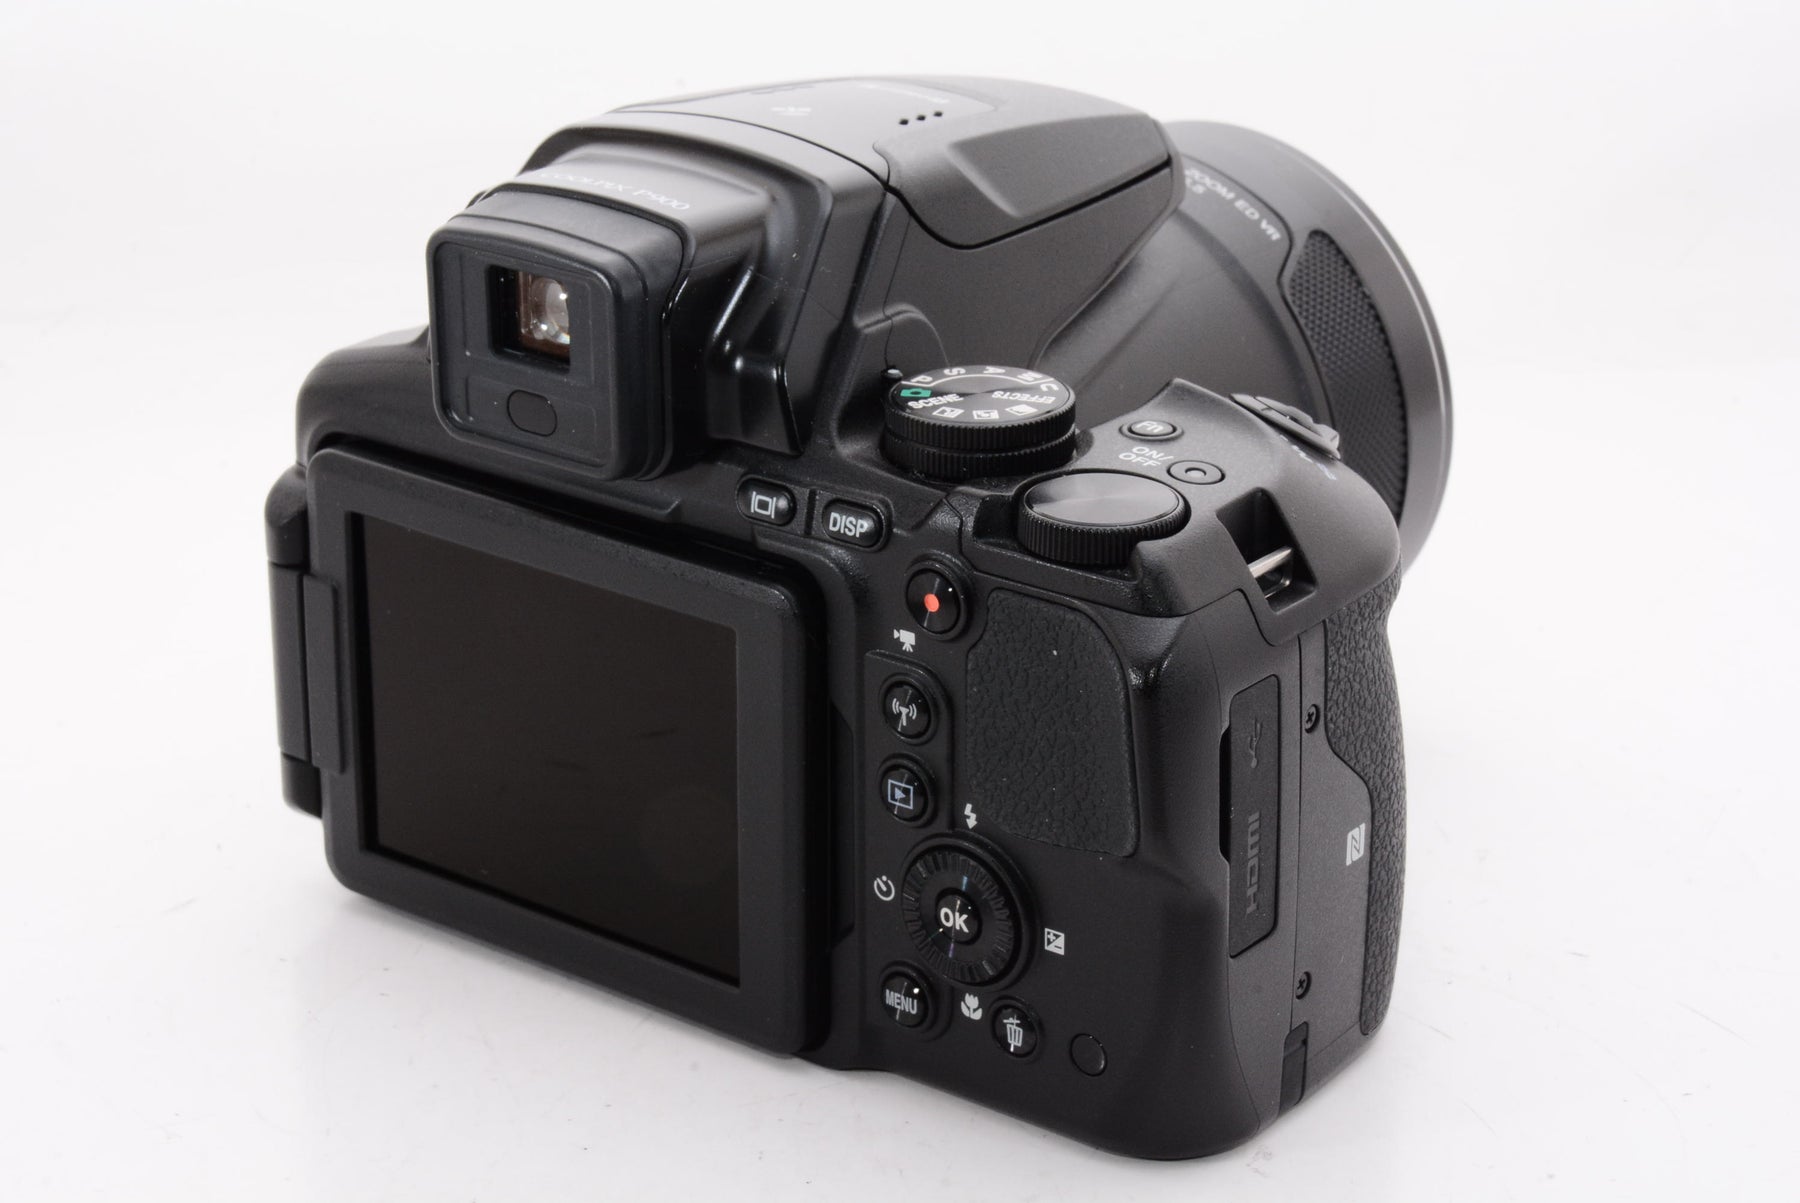 Nikon デジタルカメラ COOLPIX P900 ブラックP900BK